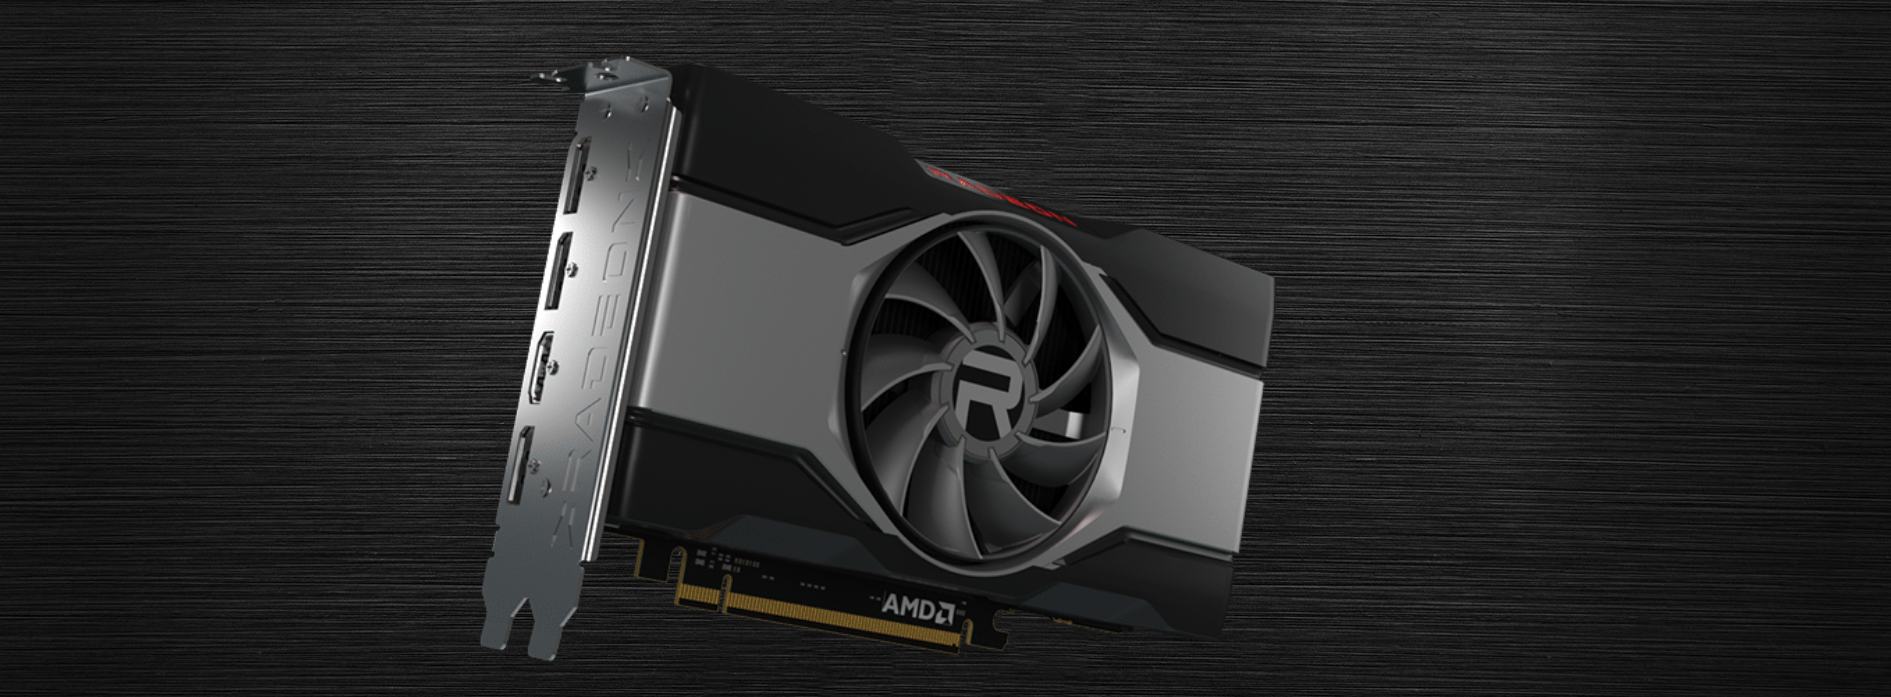 AMD lança placas gráficas Radeon RX 6600